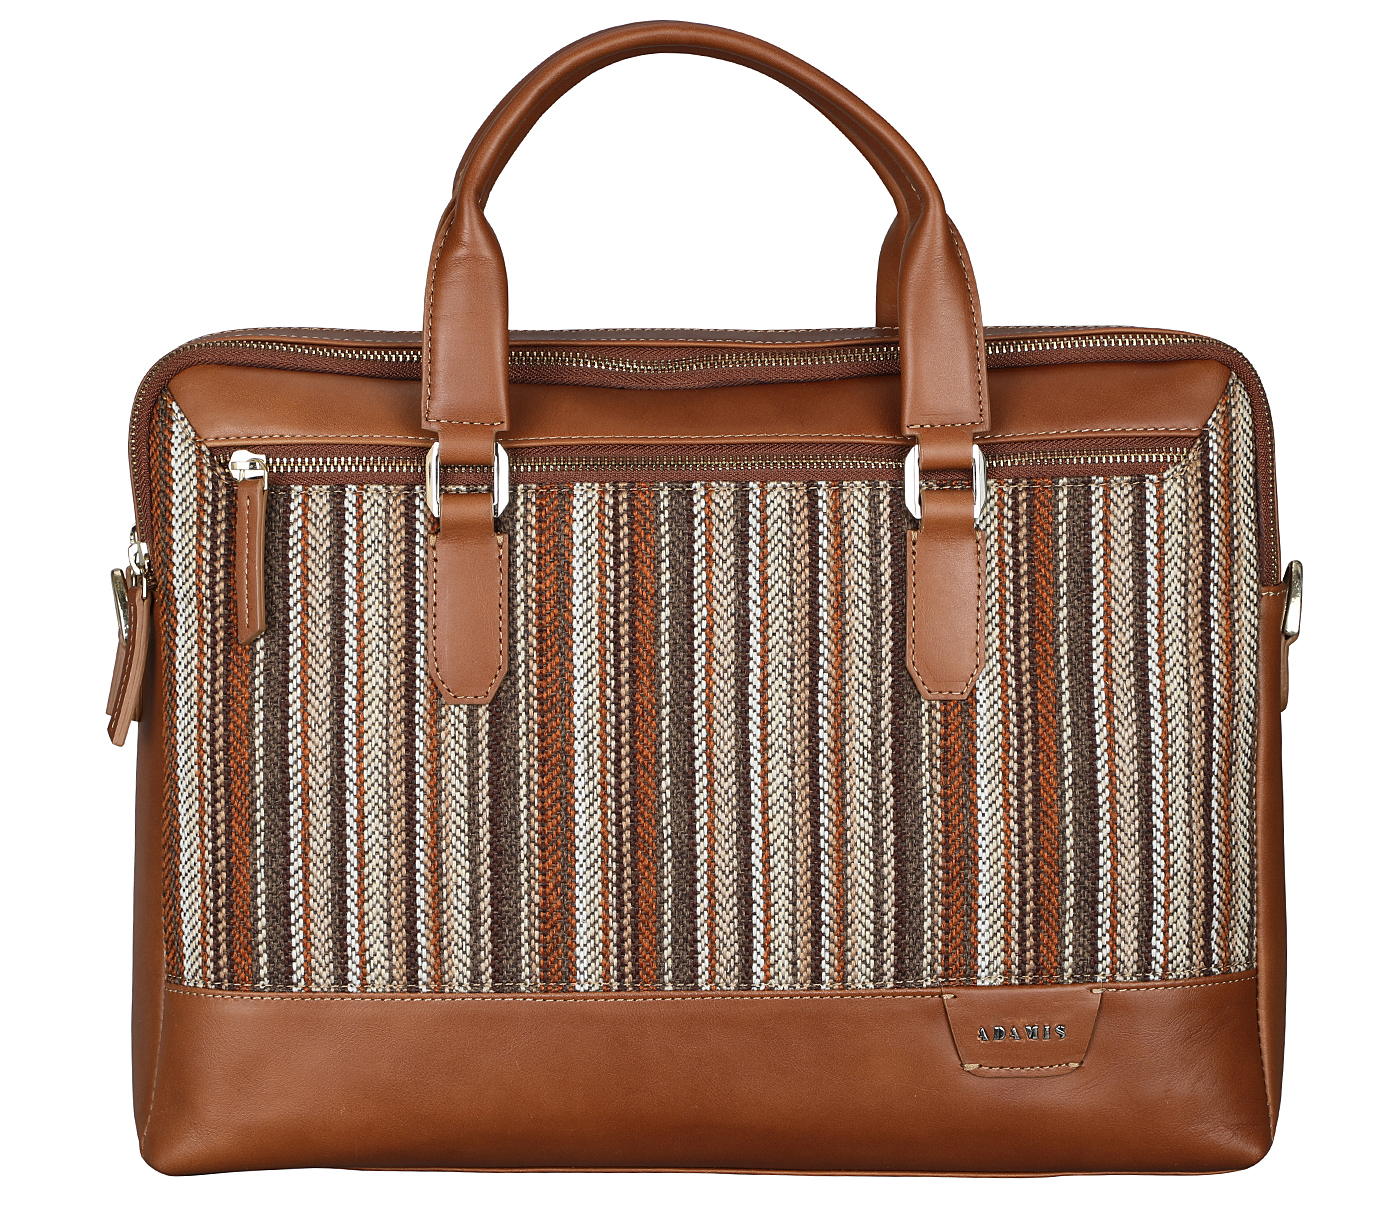 F79-Alvaro-Laptop cum portfolio bag in Multi colored Stripes print fabric with Genuine Leather combination - Tan